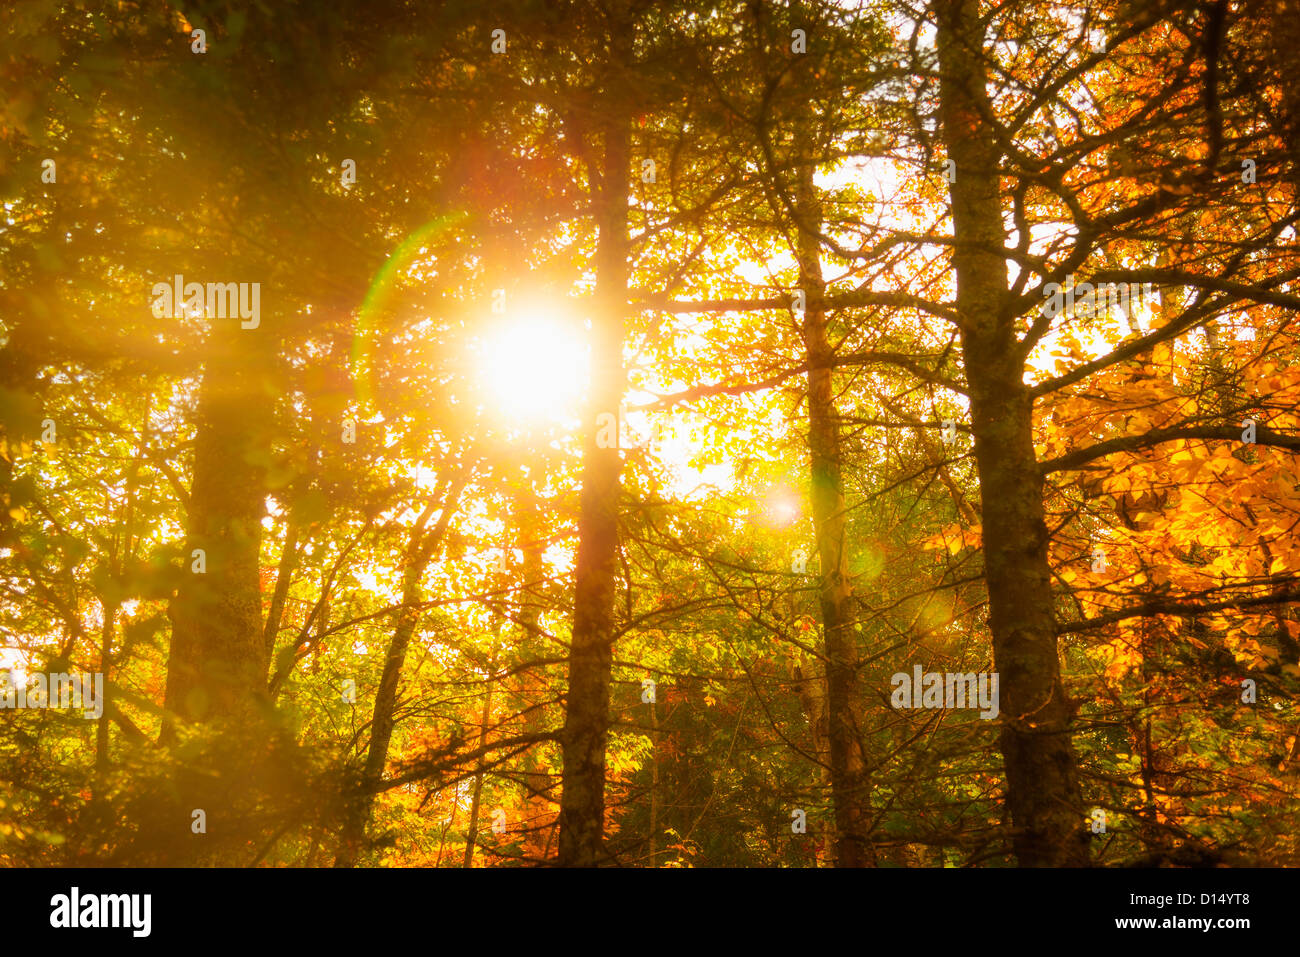 USA, Maine, Camden, Sun shining through tree branches Stock Photo